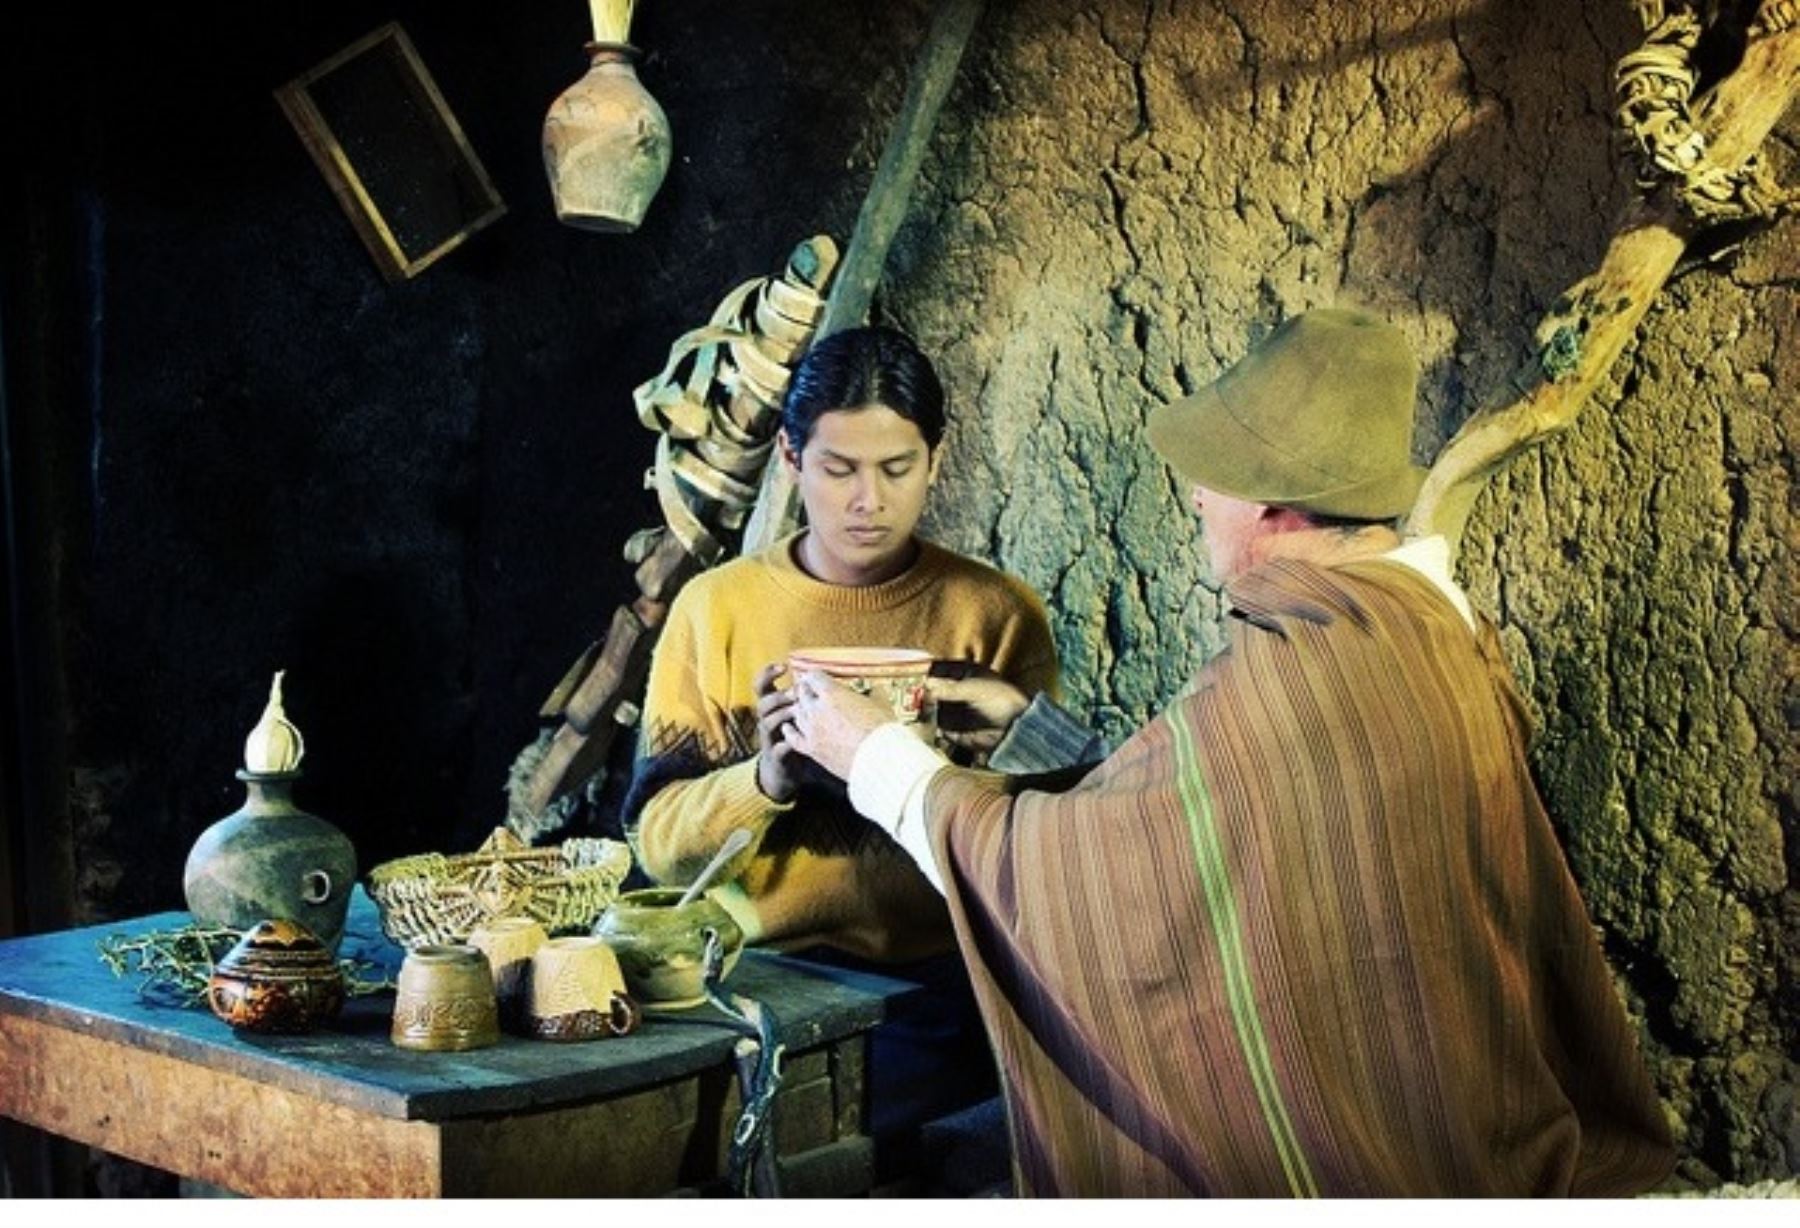 Cinefórum BNP proyecta “Yawar Wanka”, película sobre mitología andina